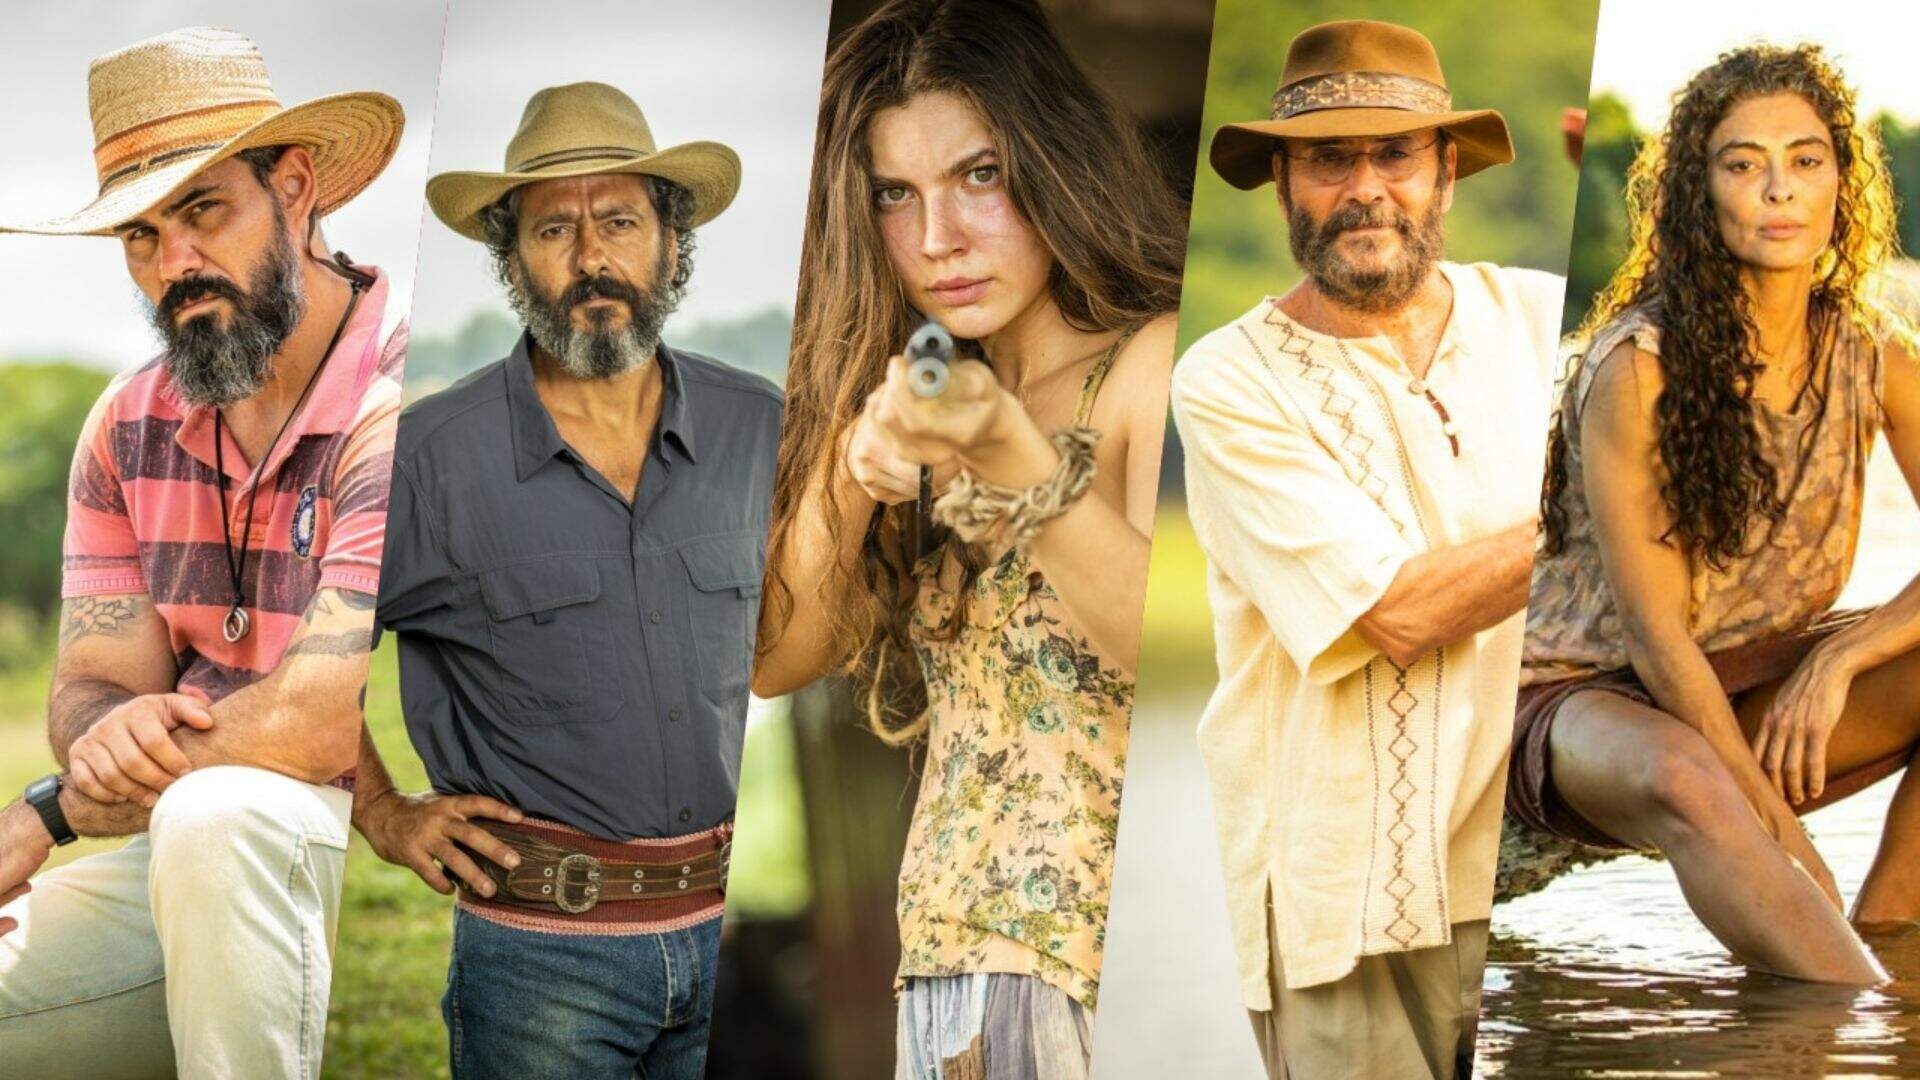 Pantanal: saiba quem ainda vai morrer na trama e quem serão os novos personagens na história - Metropolitana FM